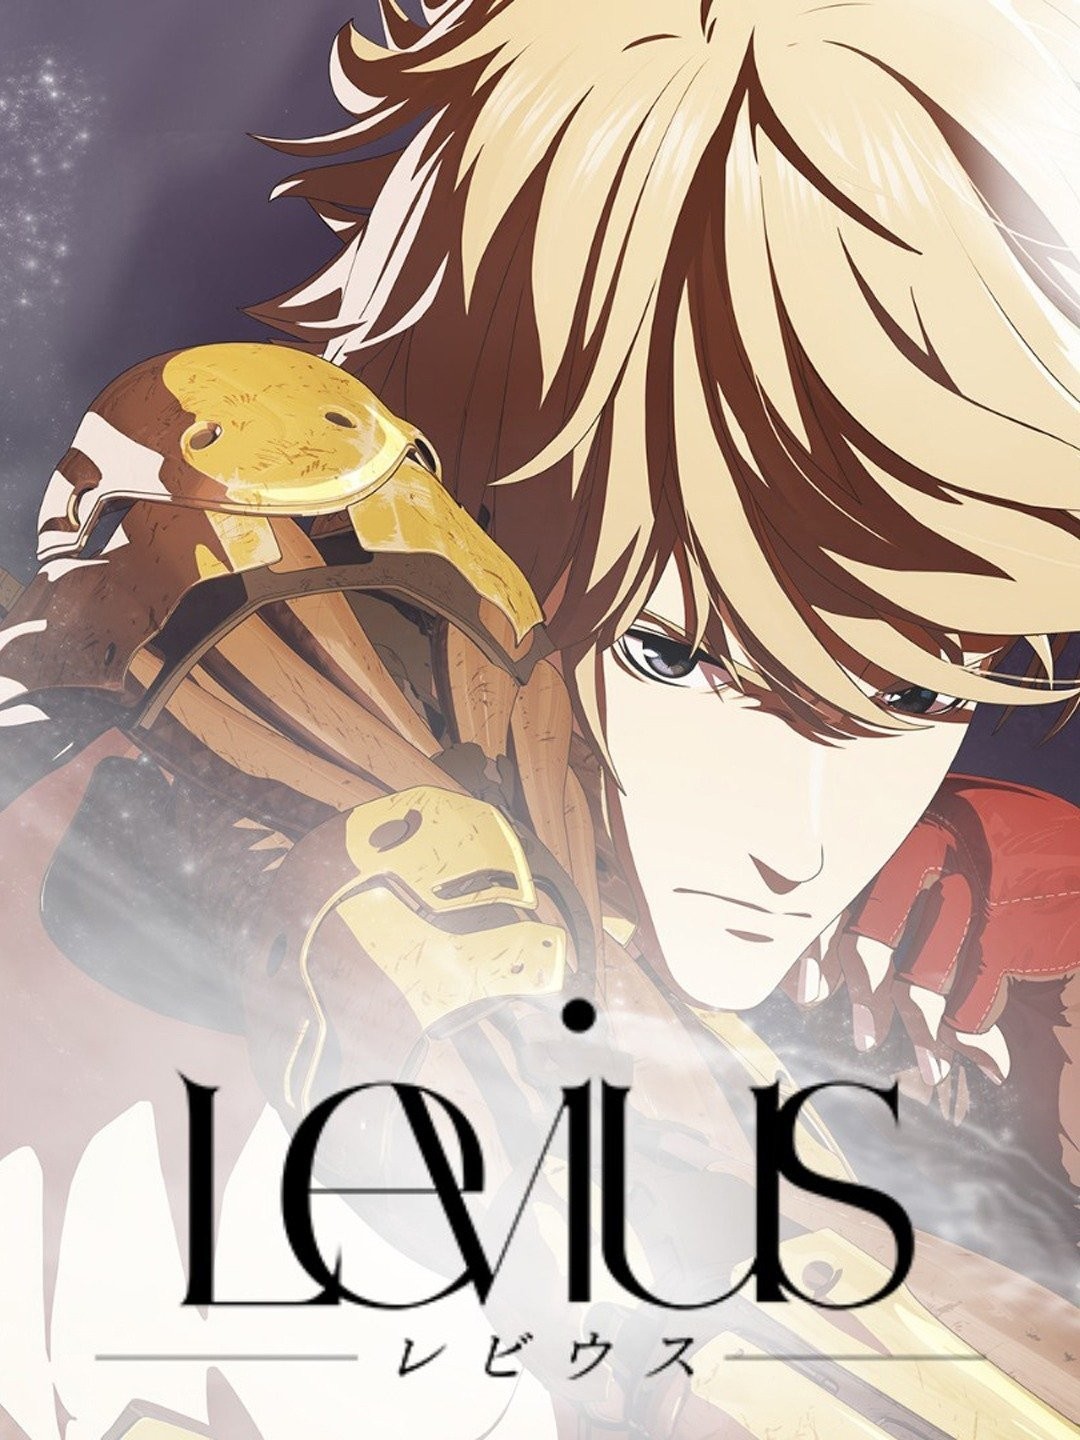 Watch Levius  Netflix Official Site